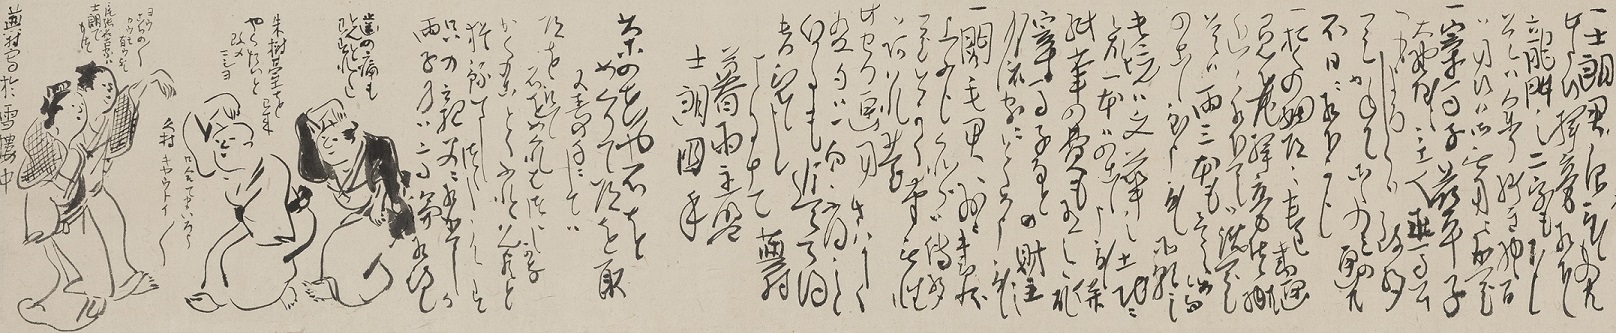 蕪村の手紙。脇にはおどけた様子の人物が戯画風に描かれる。